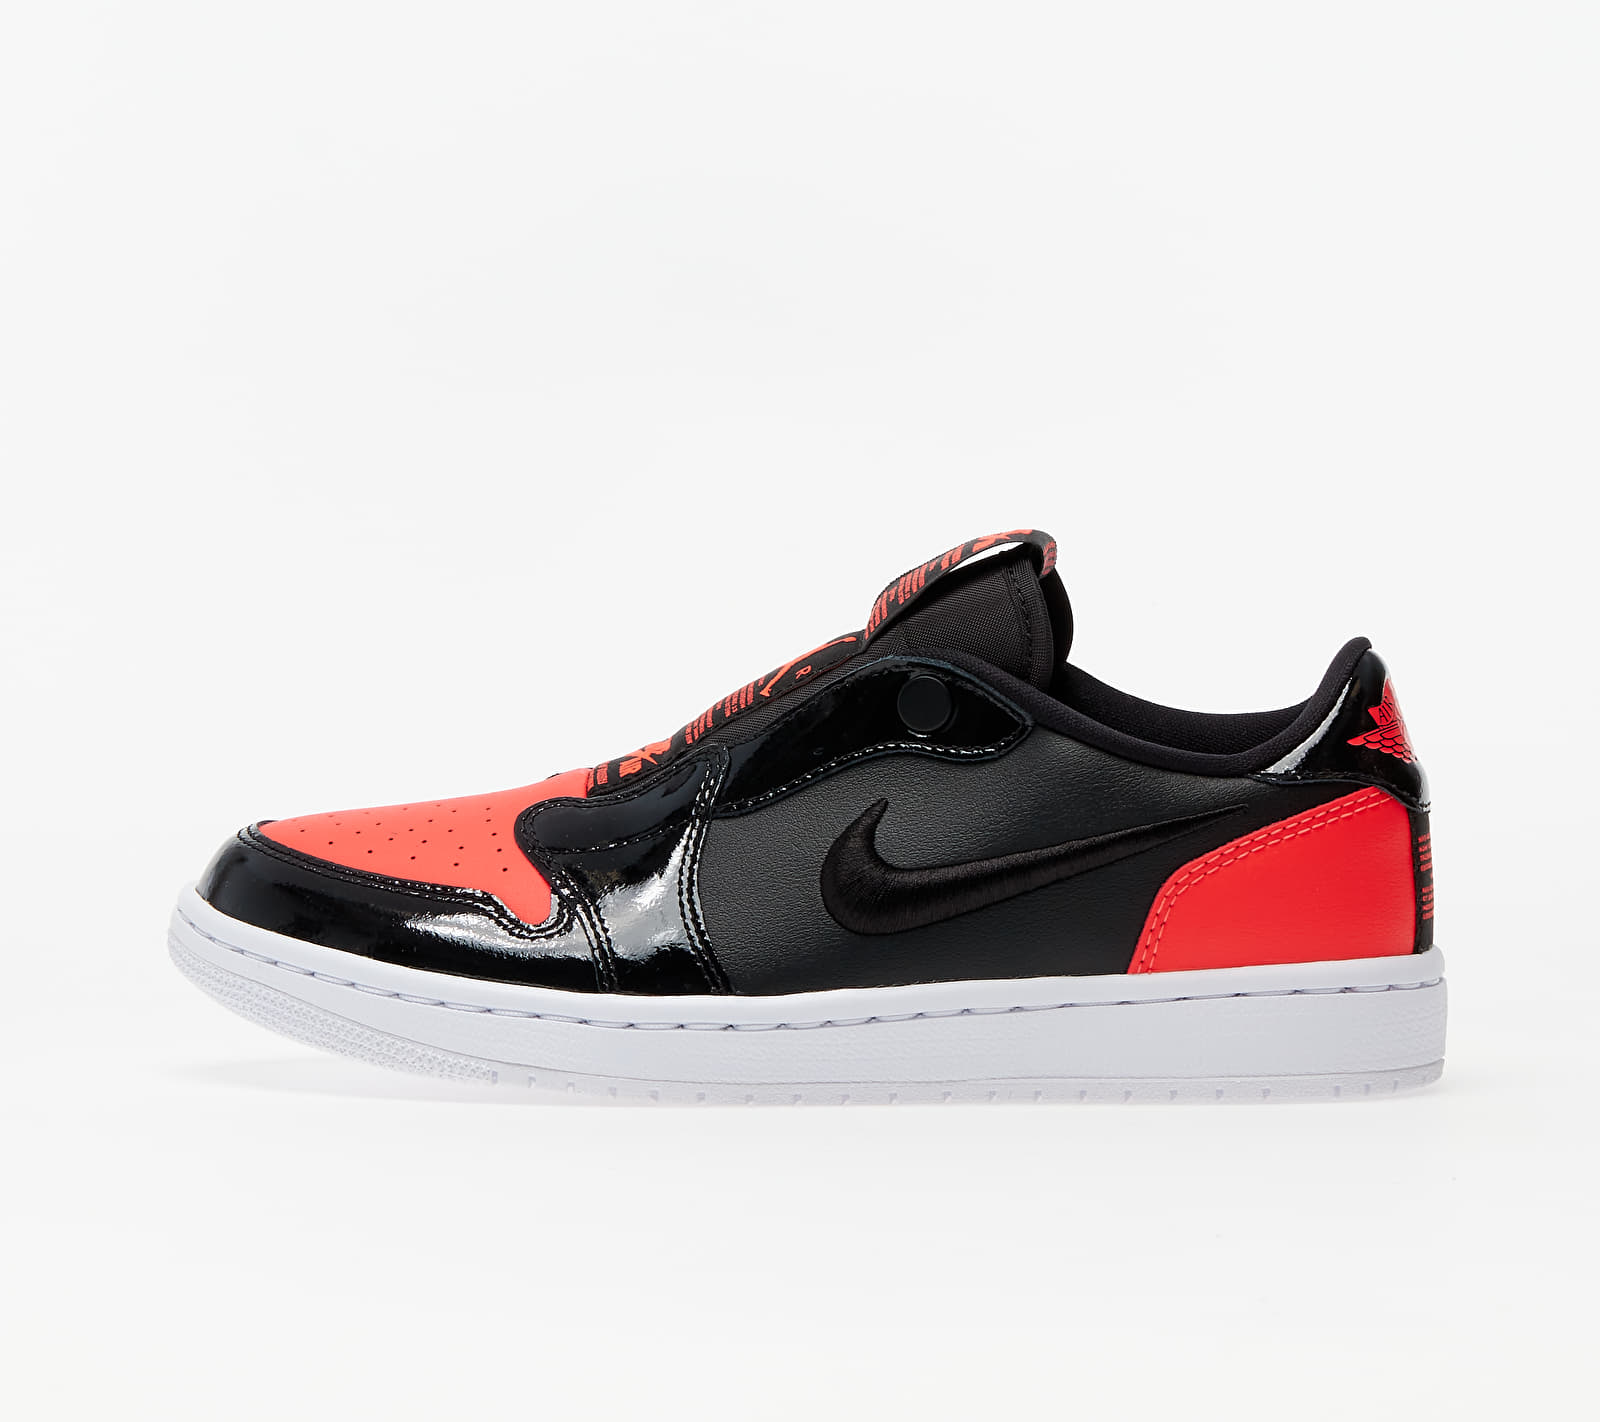 Nike Wmns Air Jordan 1 Retro Low Slip Bright Crimson/ Black-White AV3918-600